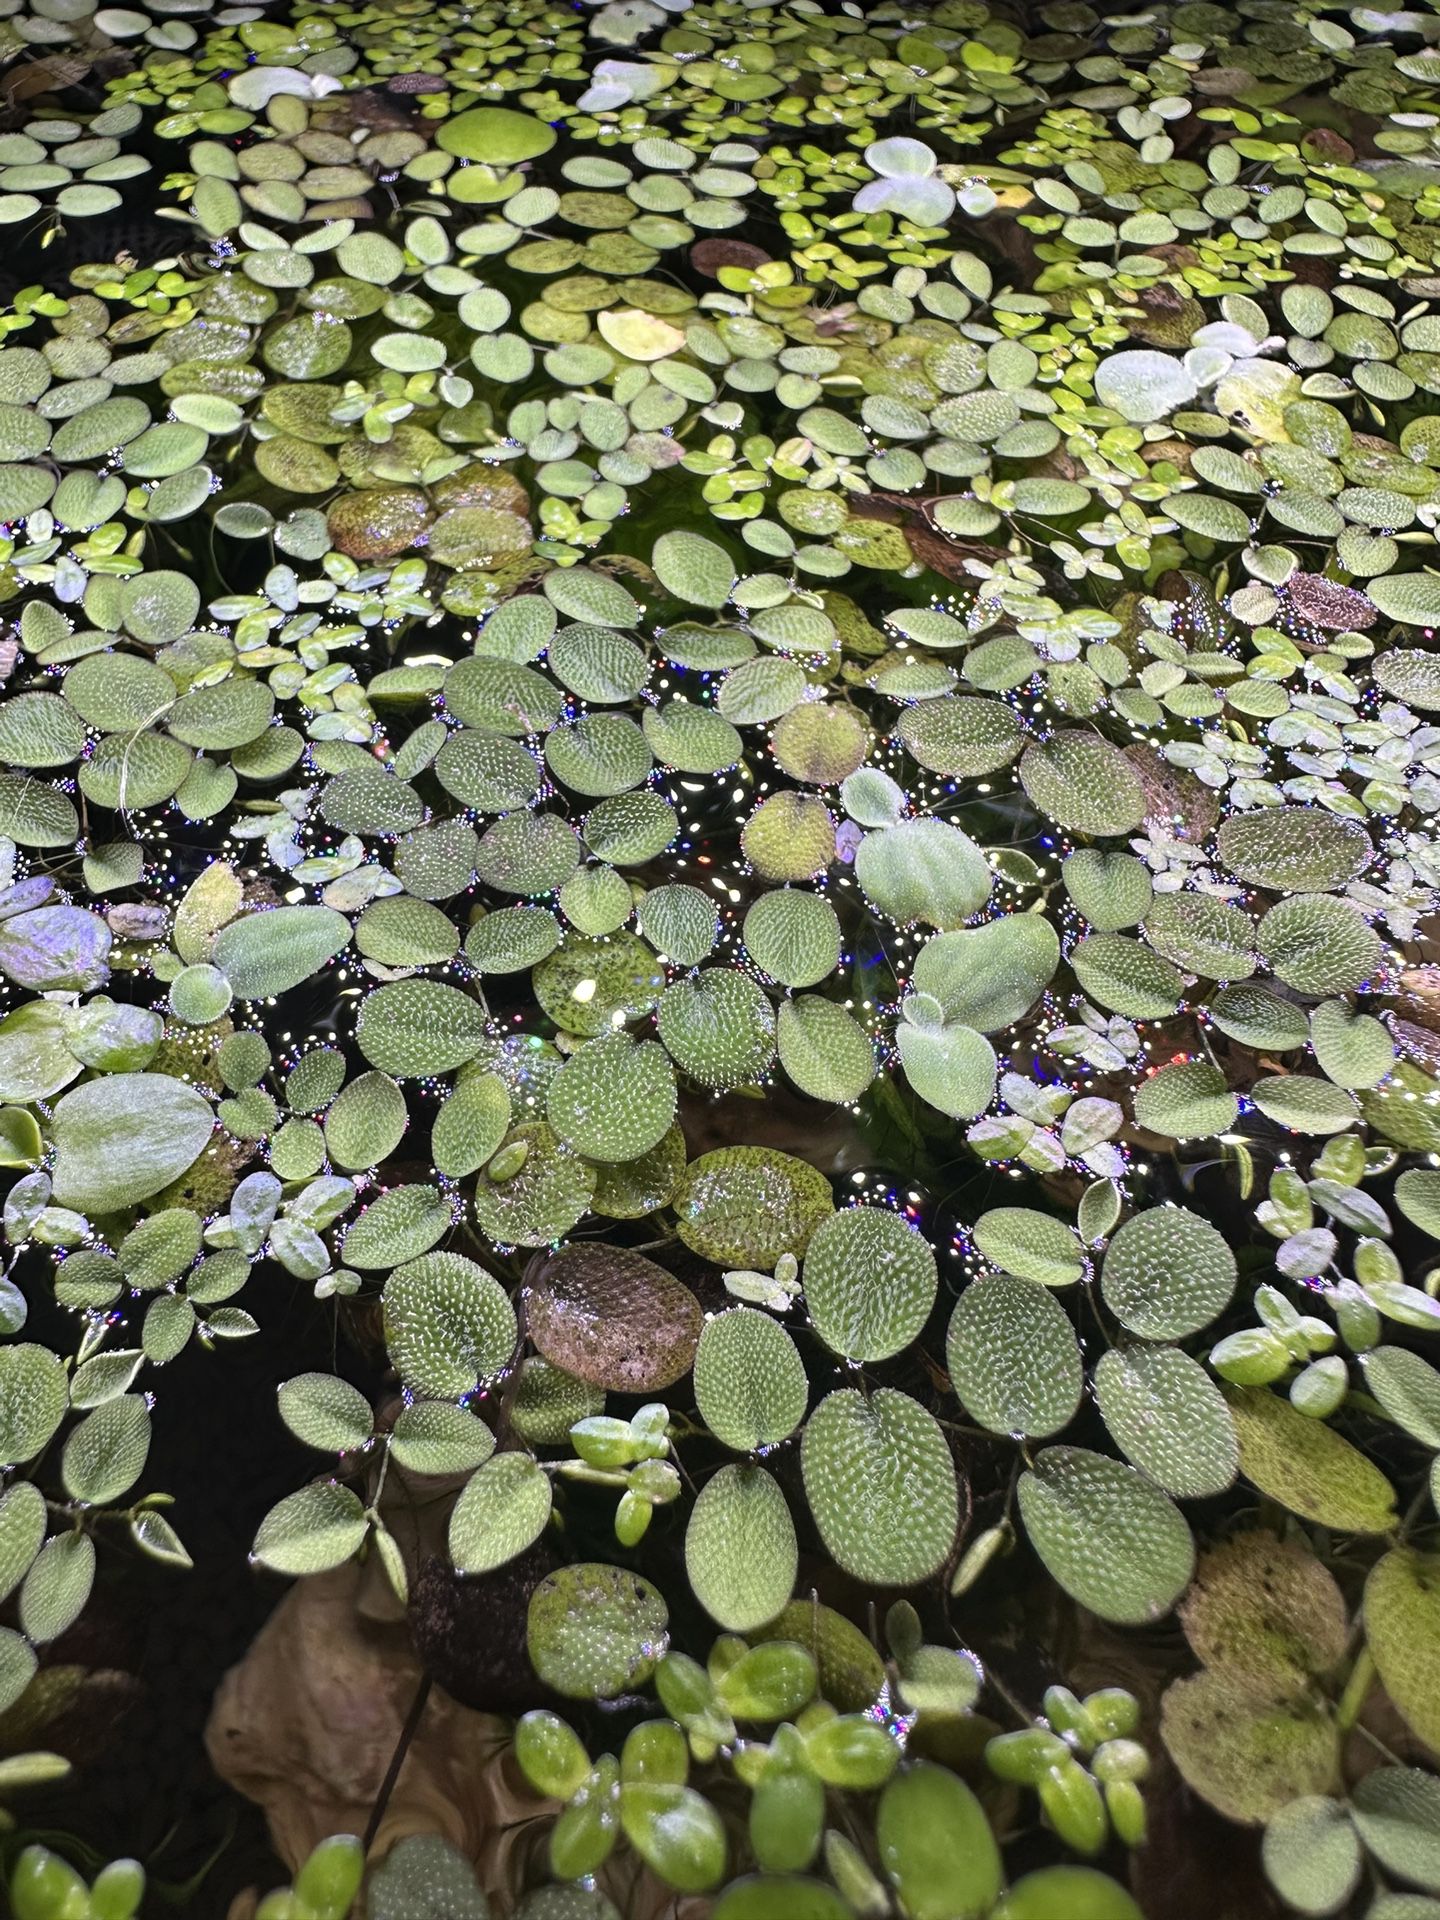 Floating Plants / Aquatic plants